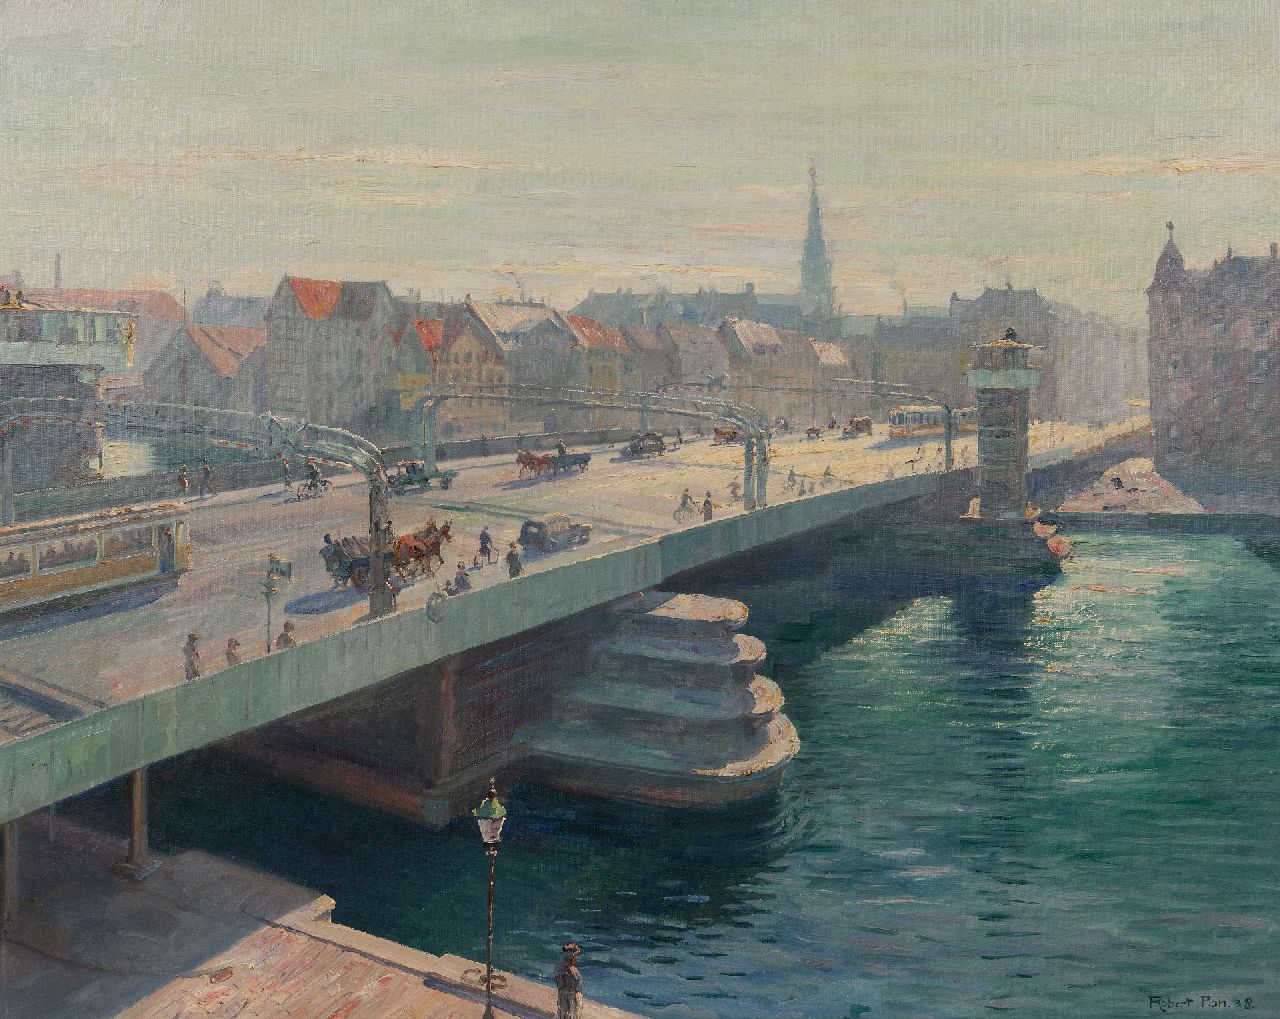 Panitzsch R.  | Robert Panitzsch | Schilderijen te koop aangeboden | De nieuwe Knippelsbro brug in Kopenhagen, olieverf op doek 75,5 x 95,6 cm, gesigneerd rechtsonder en gedateerd '38